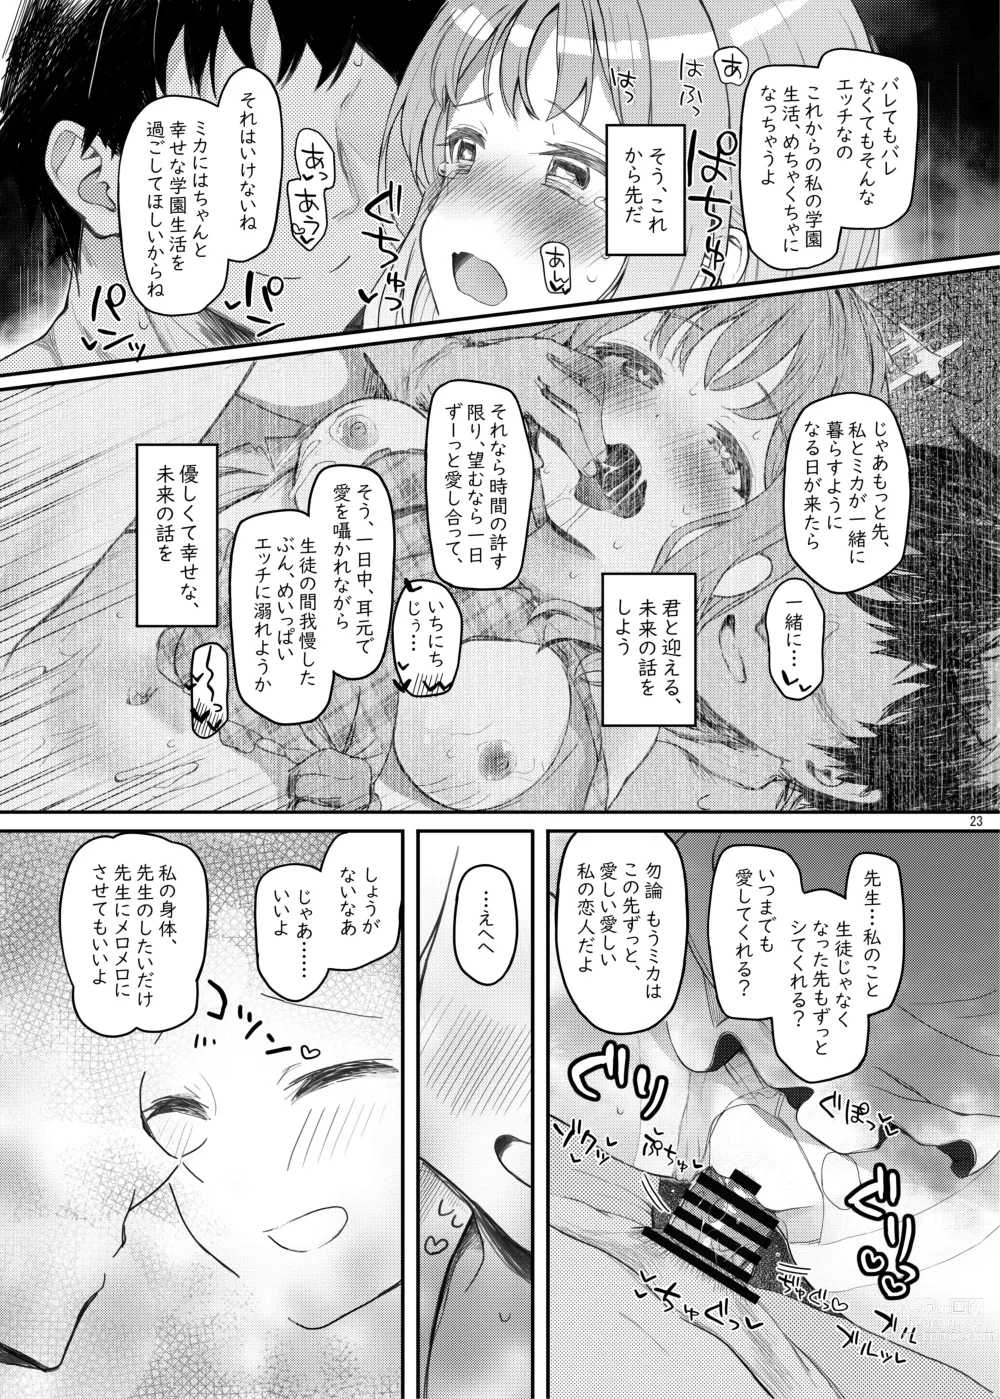 Page 22 of doujinshi Tenshi de Warui Ko DEAREST